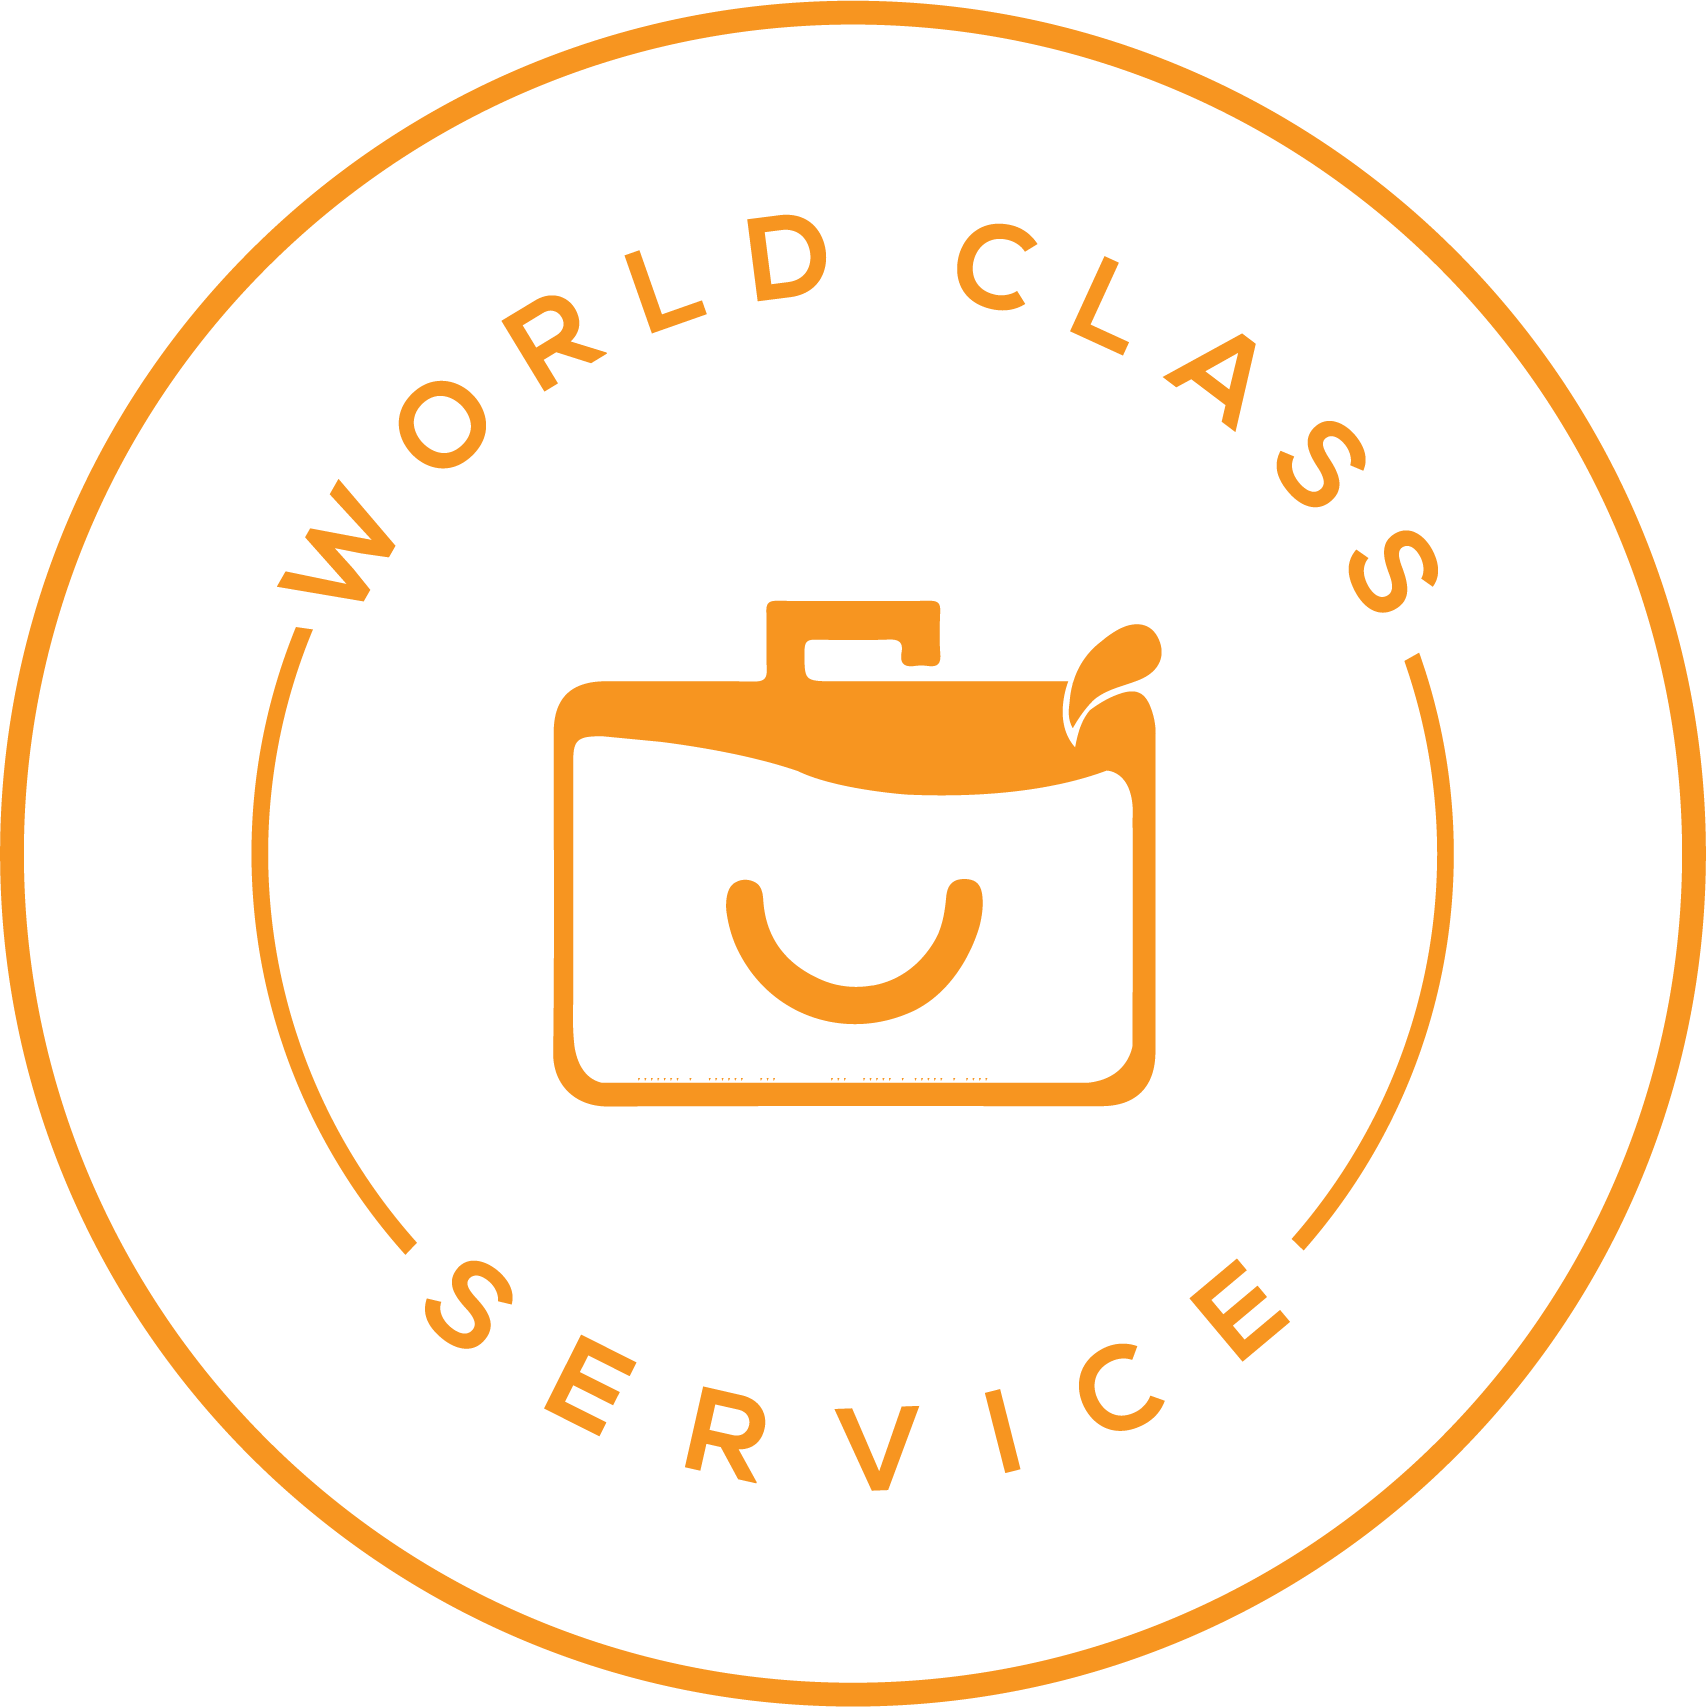 World Class Award Logo